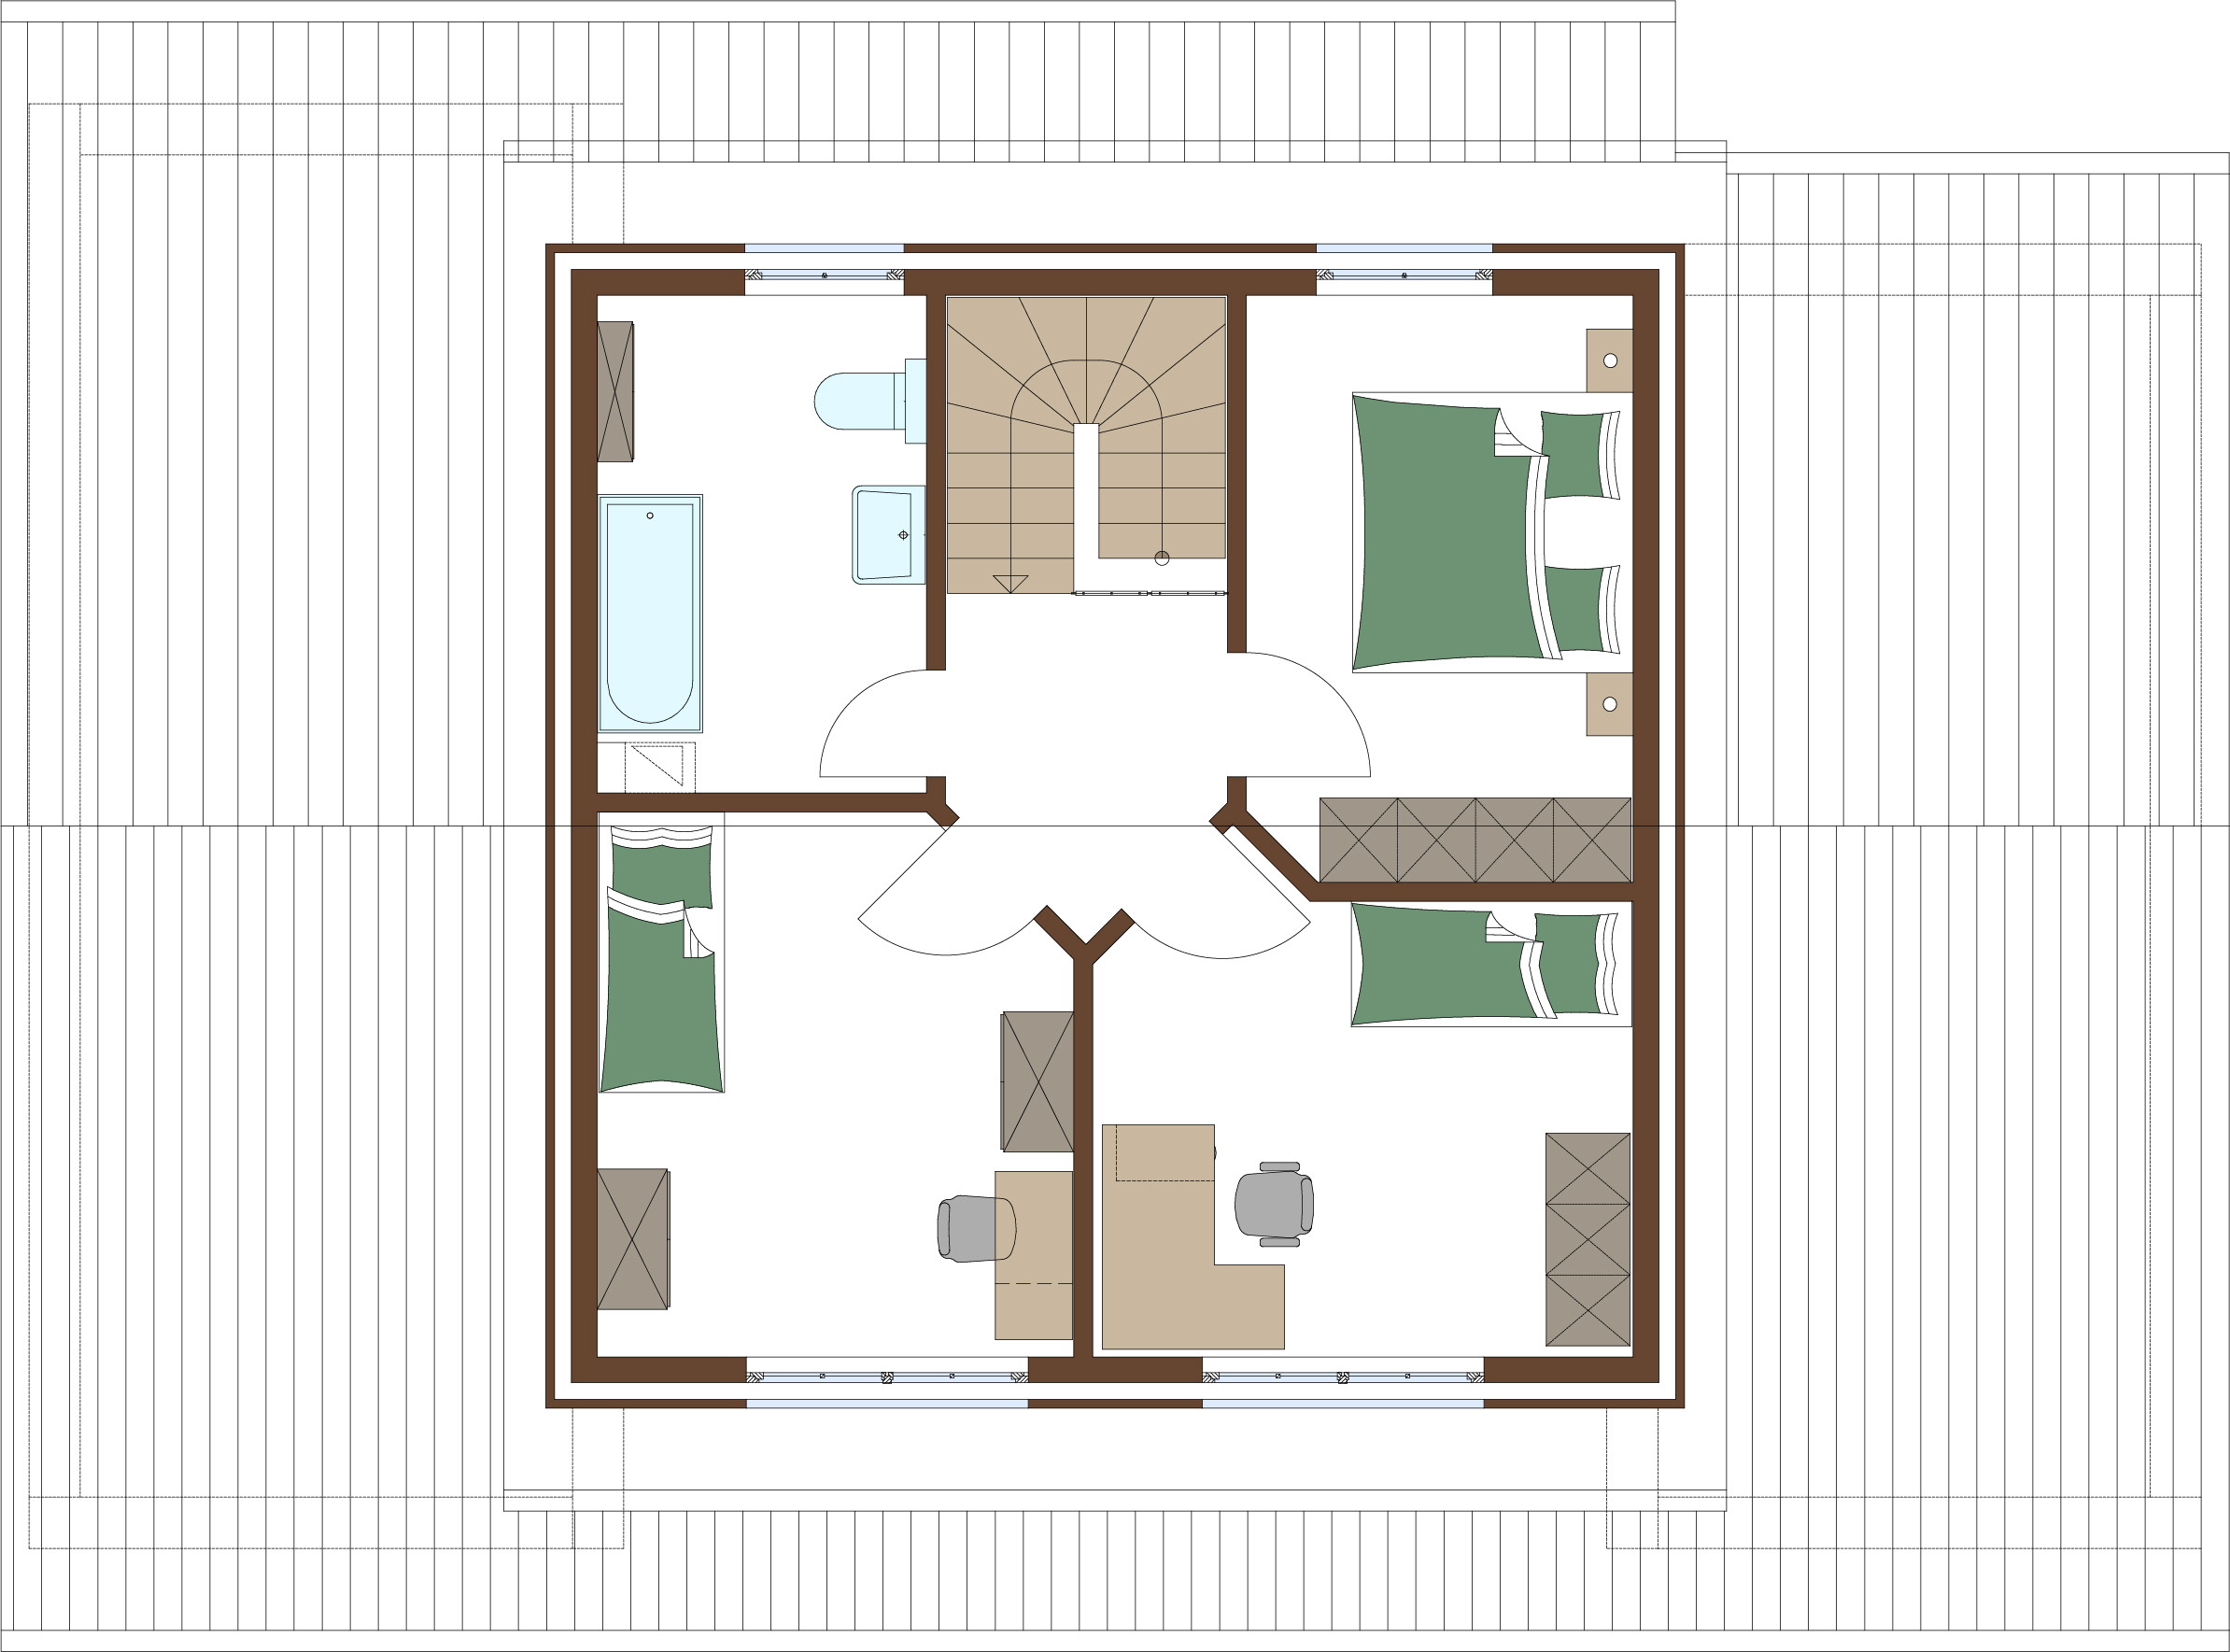 Grundriss Erdgeschoss für Holzrahmenhaus Aktionshaus Stadtvilla namens Miami für eine Familie bauen mit Gästezimmer / Hobbyzimmer und begehbarer Kleiderschrank, Speisekammer und eine Sauna ist möglich im Nordamerikanisches Design